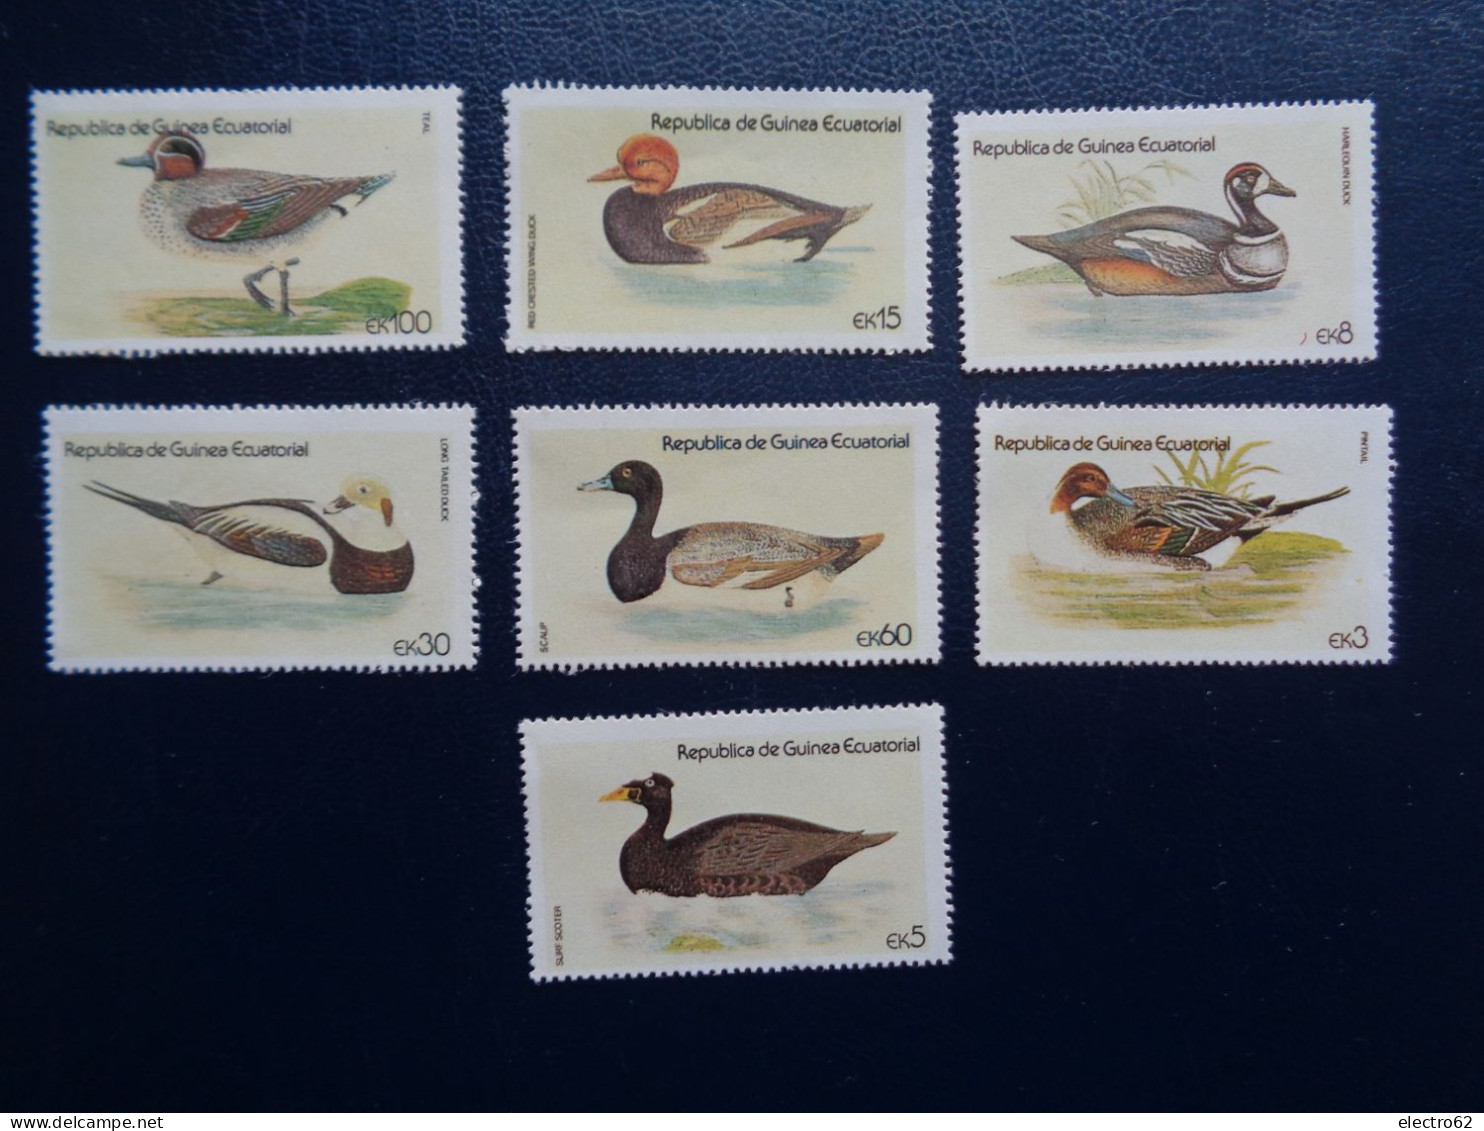 Guinée Equatoriale Canard Duck Ente Pato Anatra Eend Giappone And Guinea Ecuatorial - Ducks